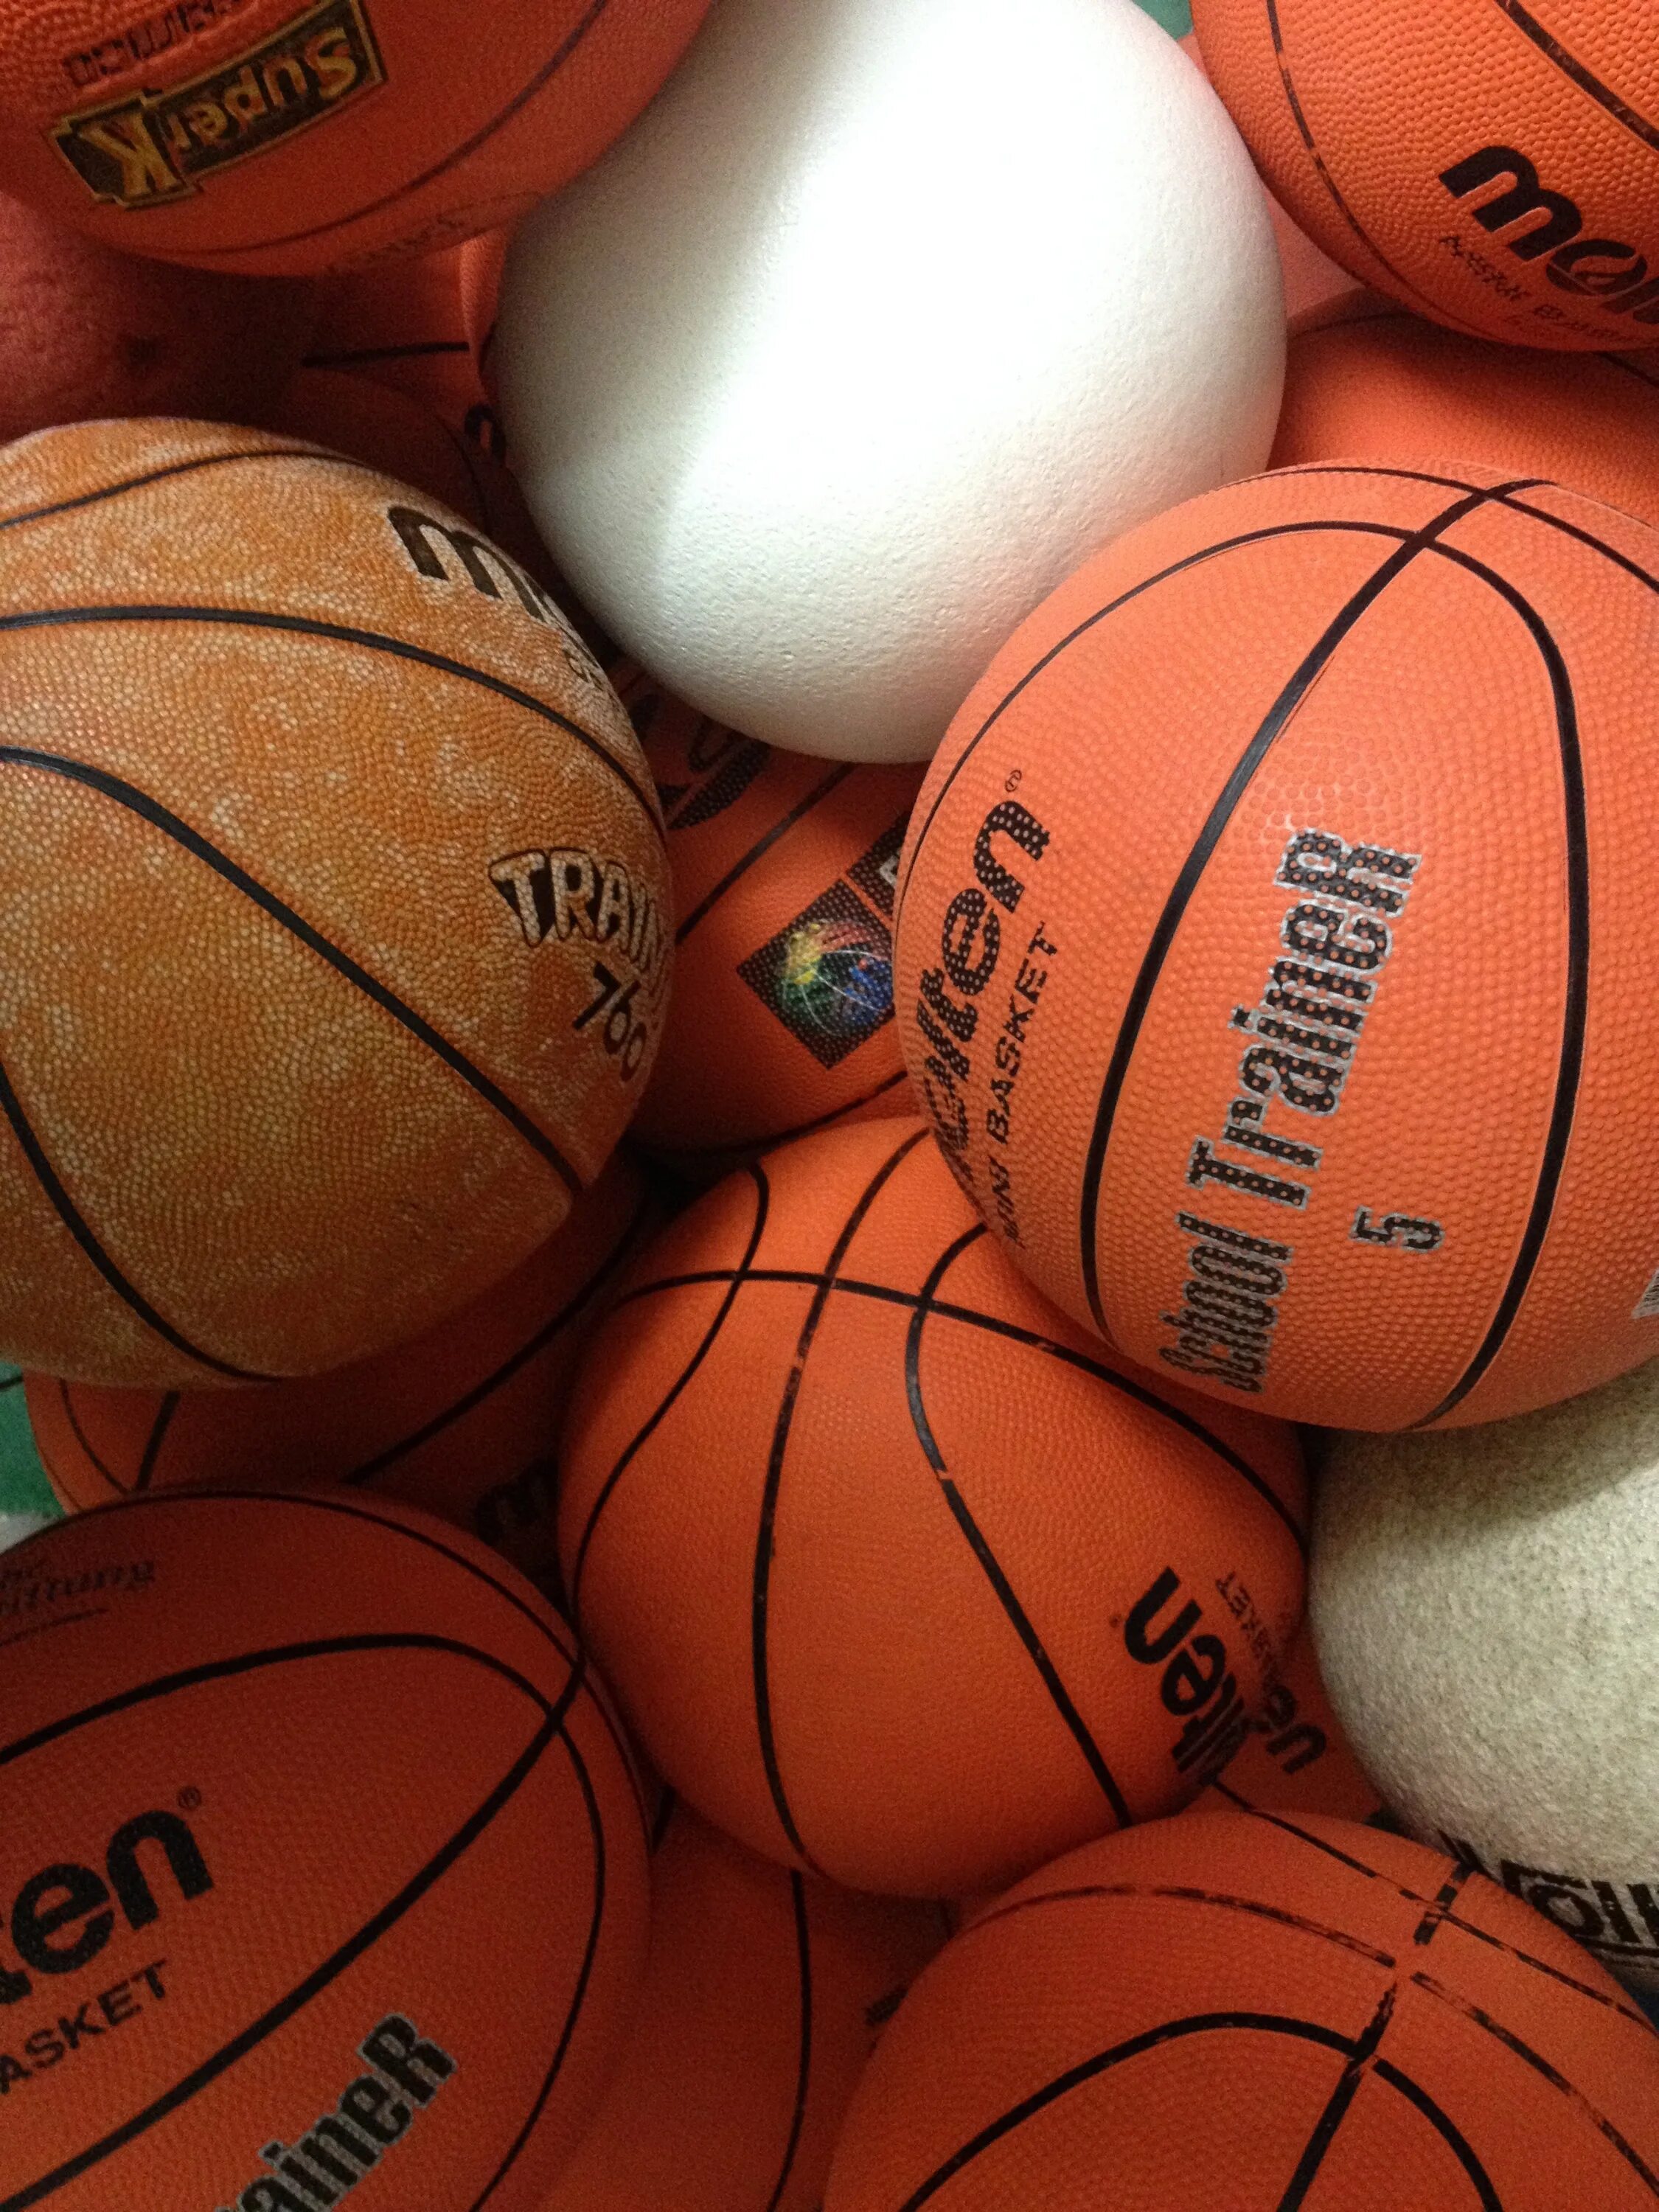 Бол личный. Спортивные мячи. Баскетбол. Красивые баскетбольные мячи. Баскетбольные мячи много.